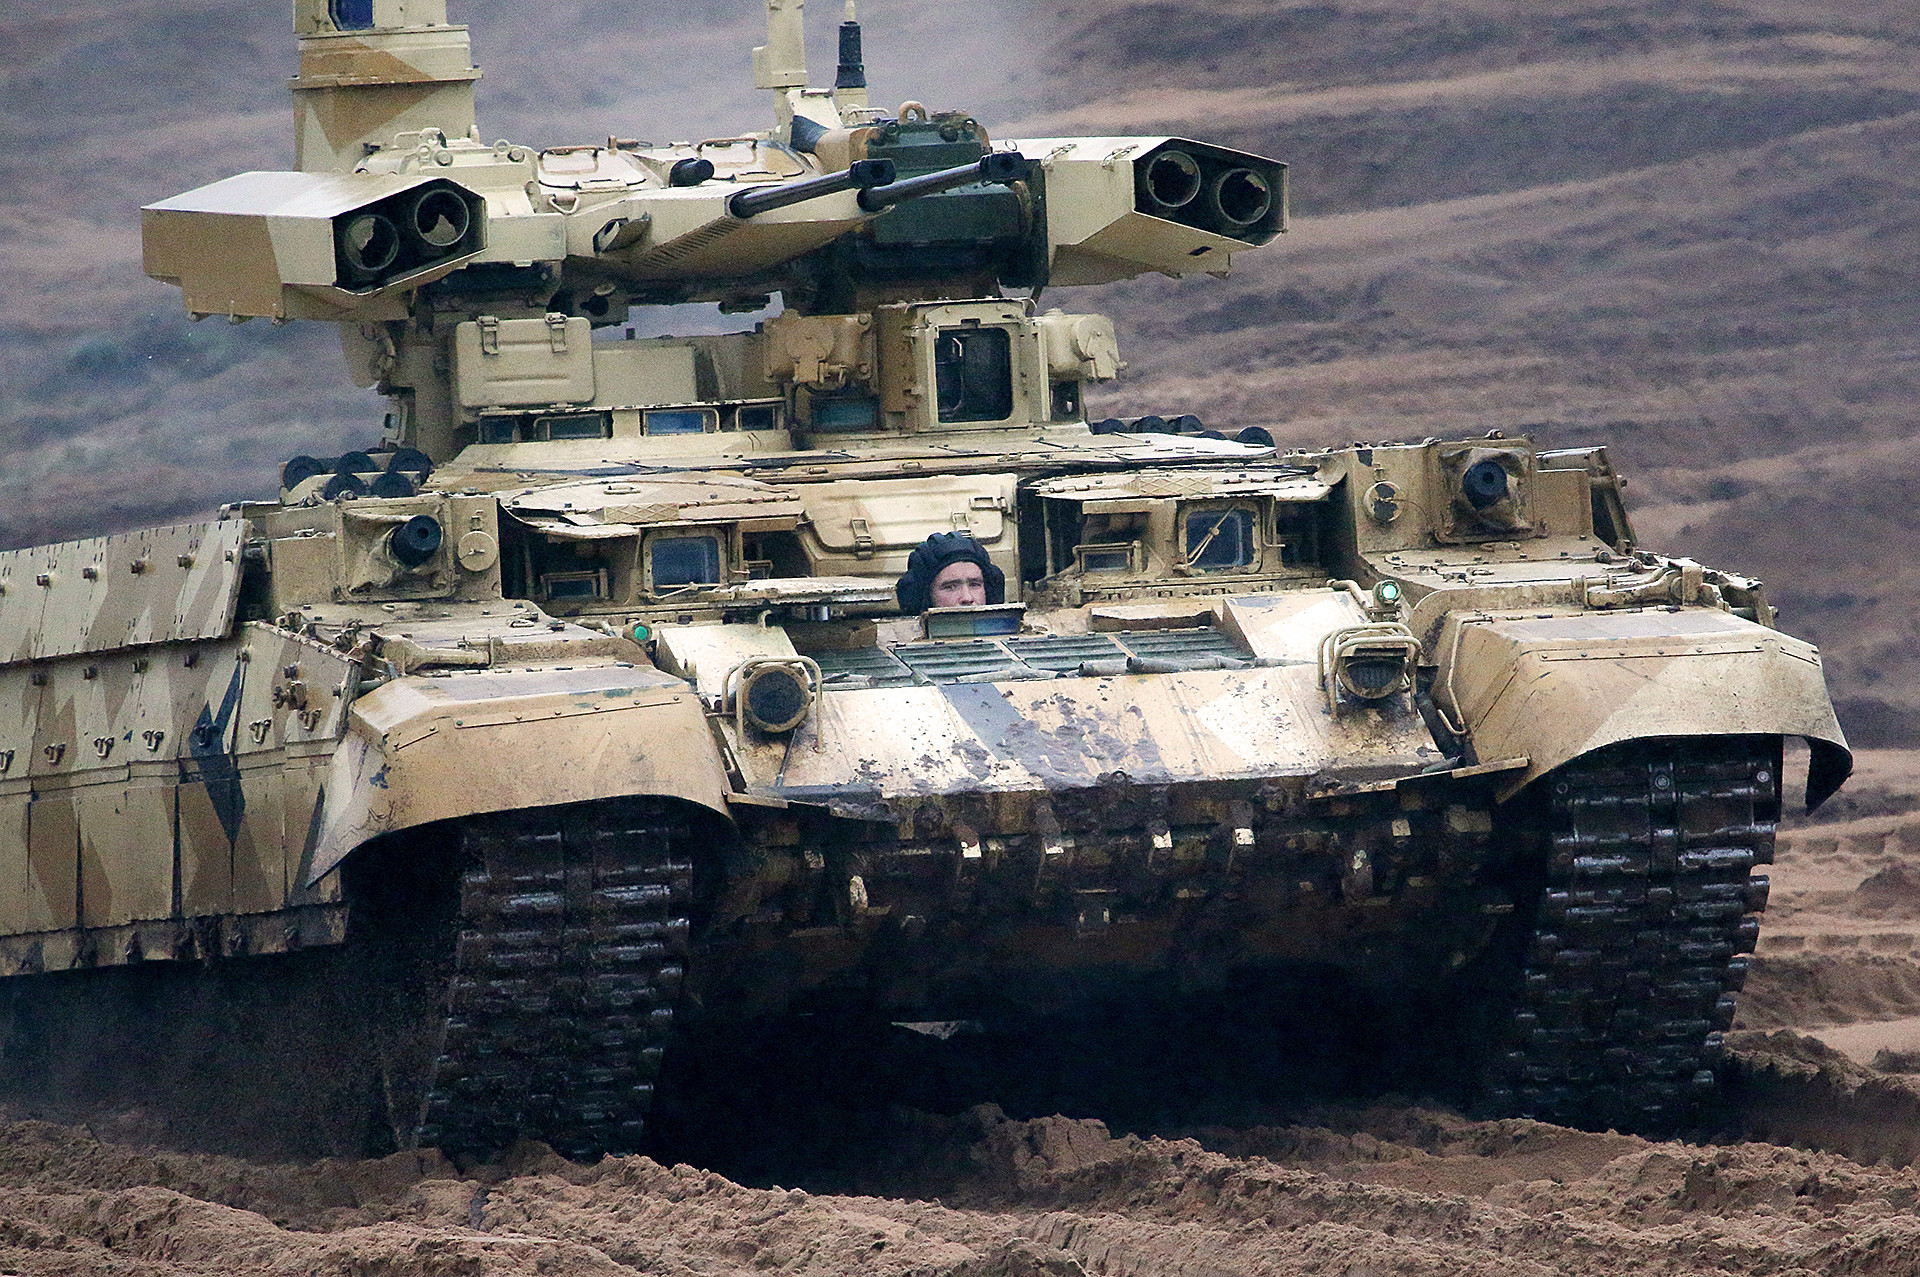 Тешко оклопно борбено возило за подршку тенкова „Терминатор 2“ на војној вежби „Запад 2017“, коју су заједнички извеле оружане снаге Русије и Белорусије.